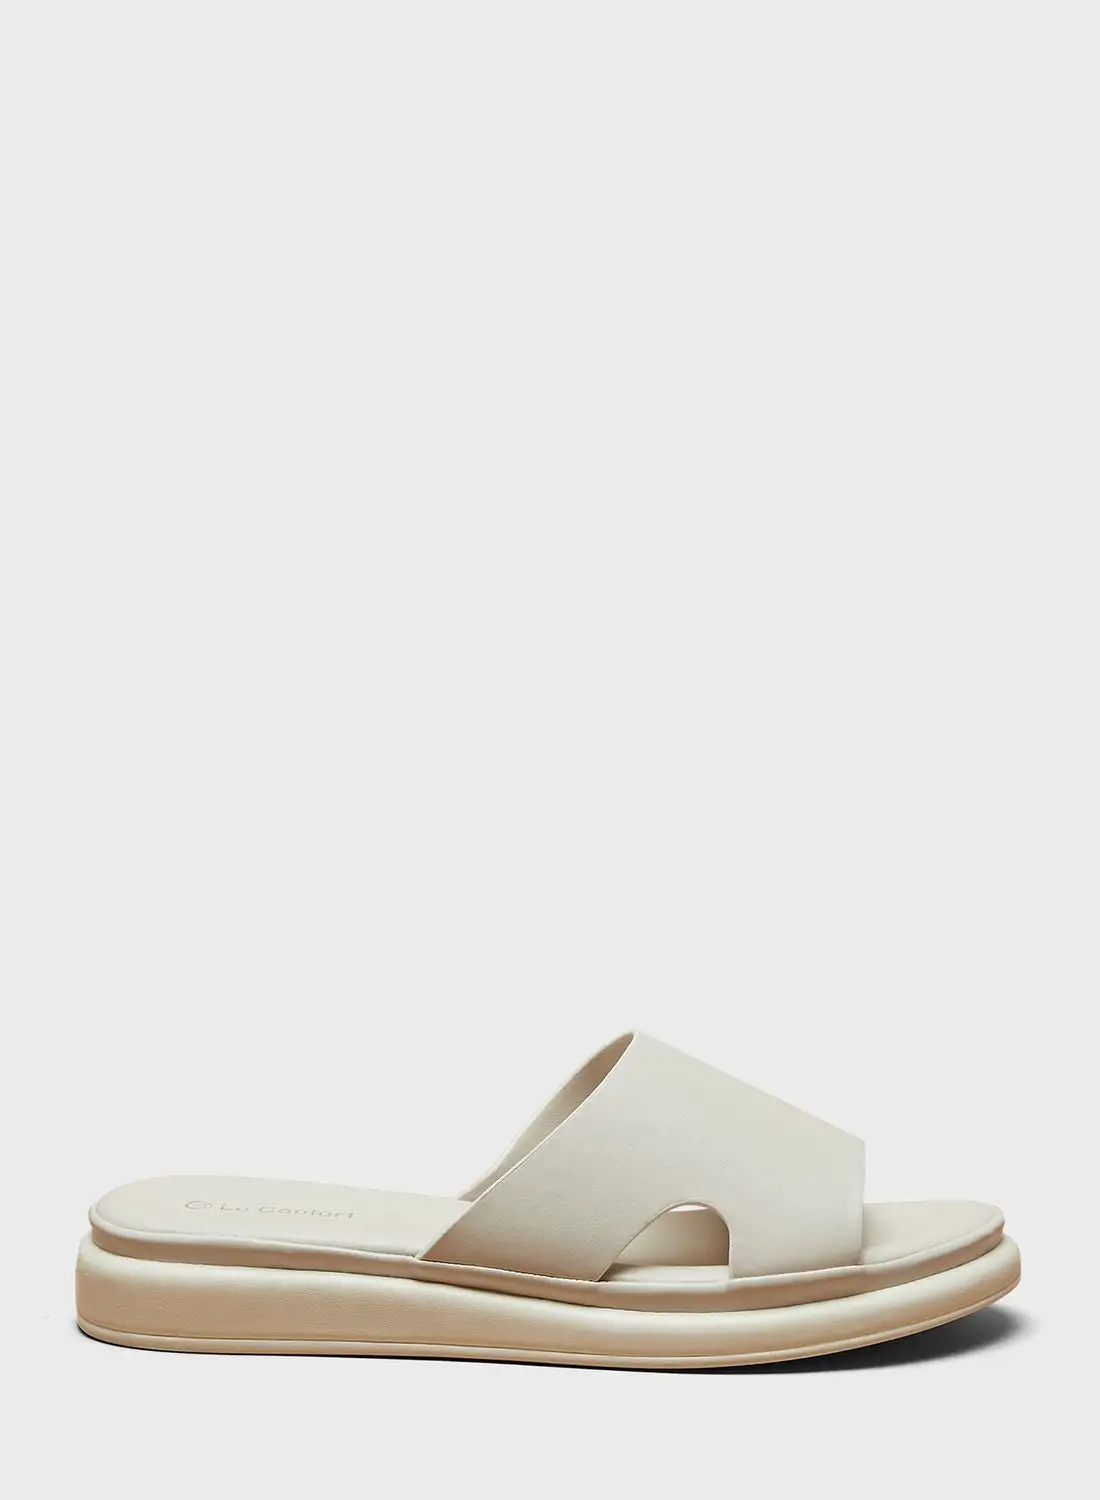 Le Confort Single Strap Flat Sandals